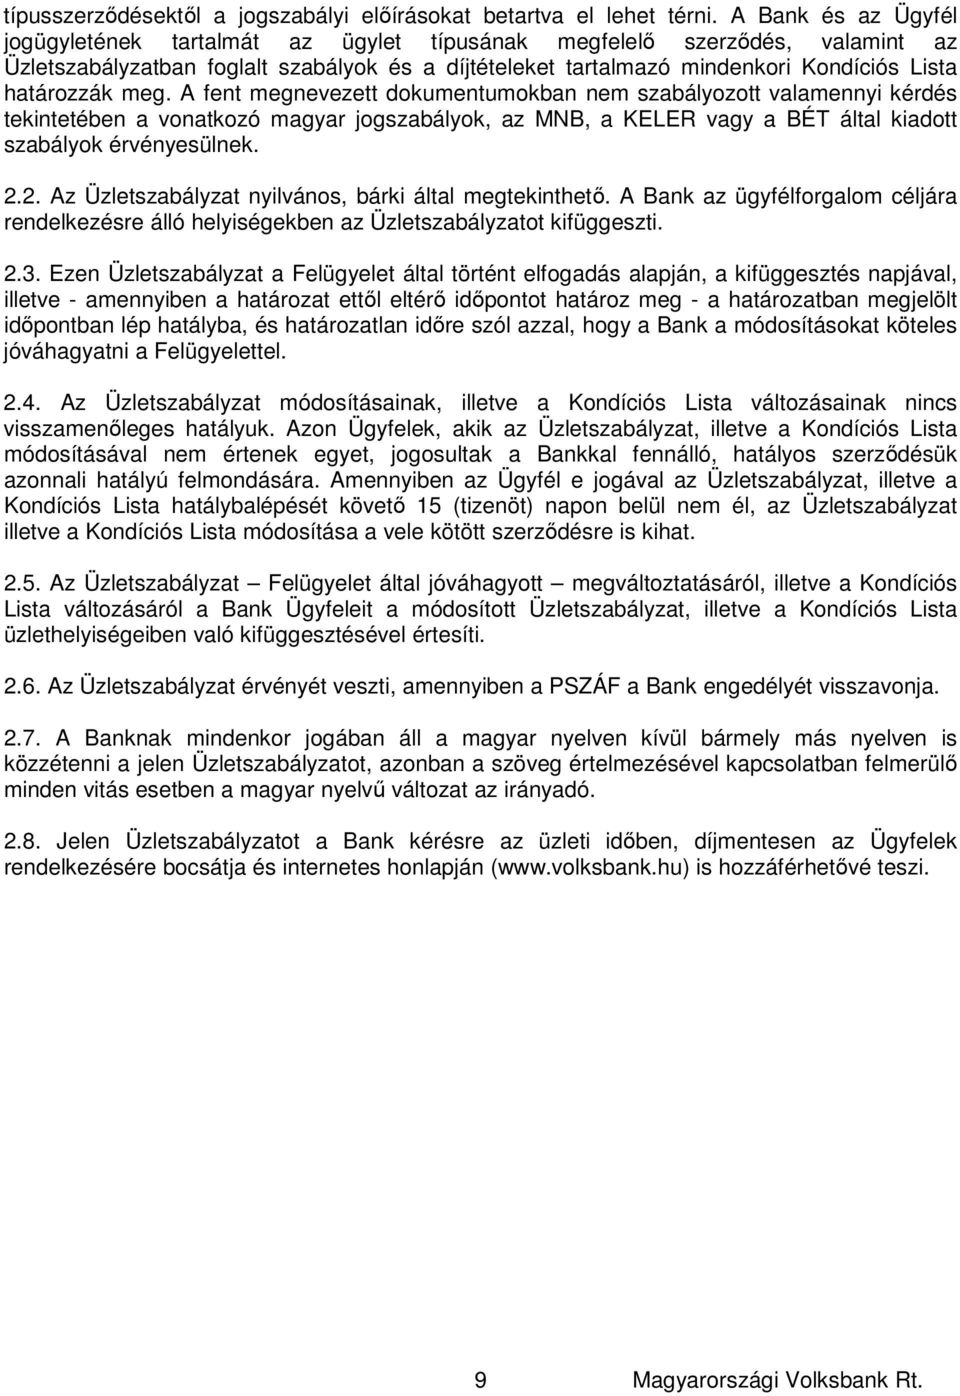 határozzák meg. A fent megnevezett dokumentumokban nem szabályozott valamennyi kérdés tekintetében a vonatkozó magyar jogszabályok, az MNB, a KELER vagy a BÉT által kiadott szabályok érvényesülnek. 2.